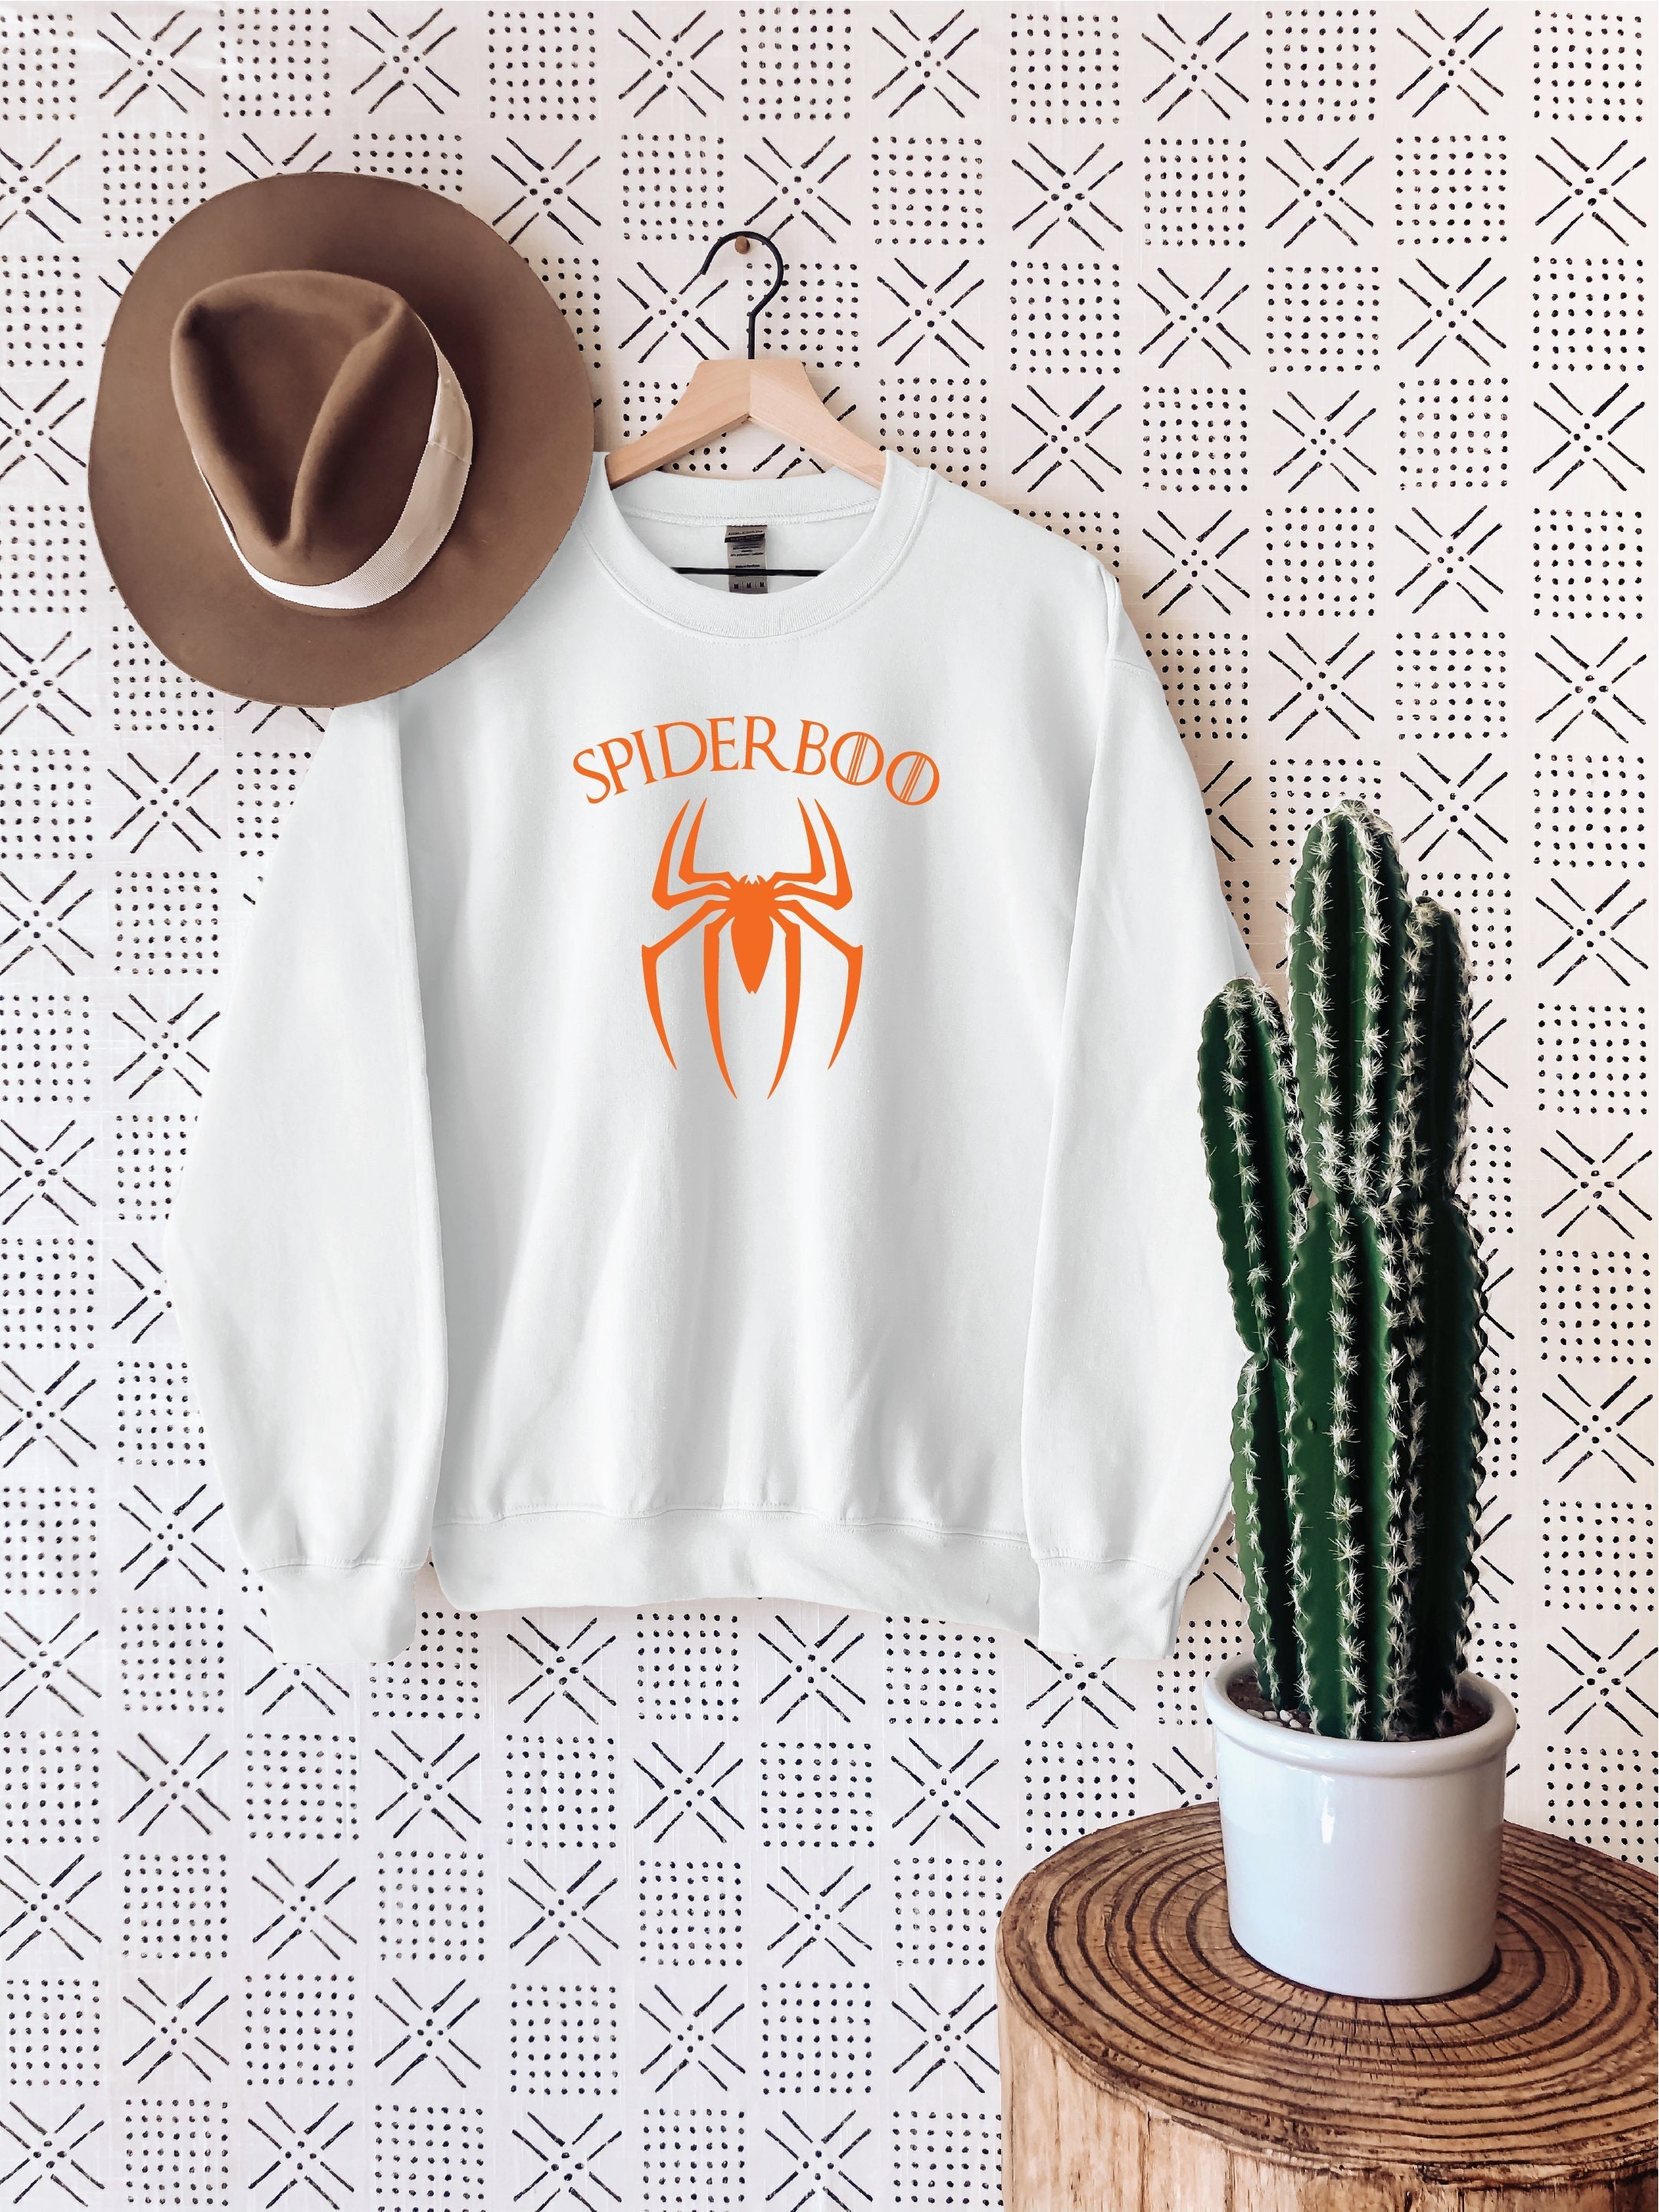 Discover SpiderBoo Sweatshirt, Halloween Sweatshirt